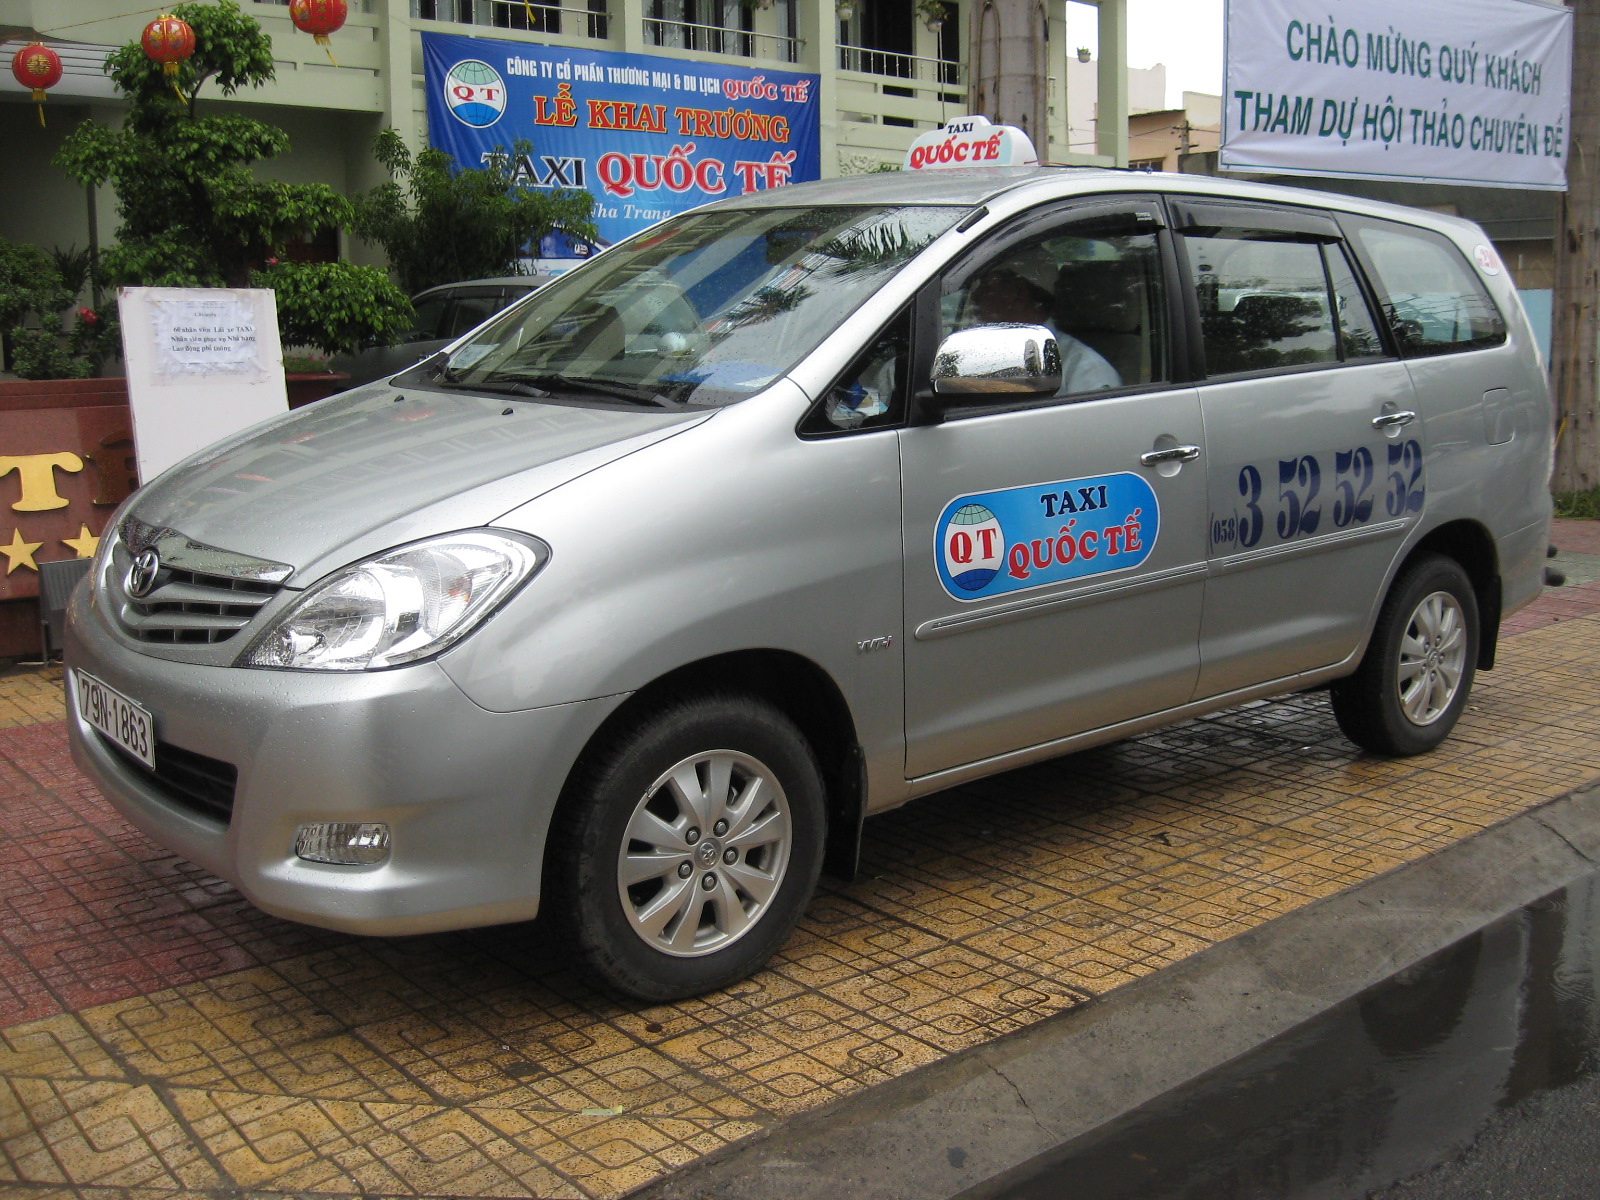 Taxi Thiên An Khánh Hòa